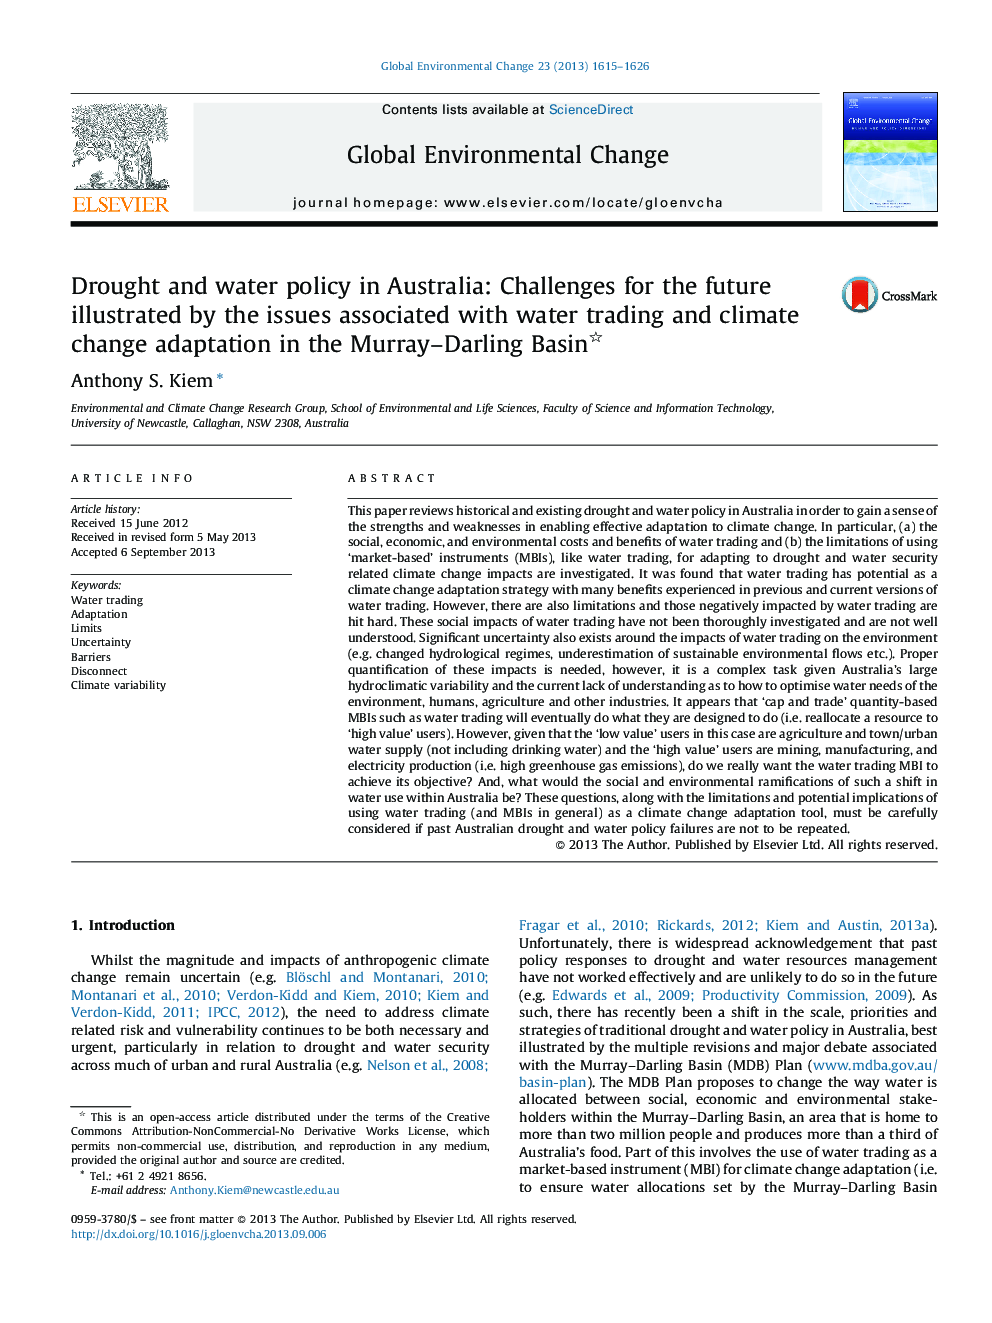 سیاست های خشکسالی و آب در استرالیا: چالش های آینده نشانگر مسائل مربوط به تجارت آب و انطباق تغییرات آب و هوایی در حوضه موری-دارلینگ 